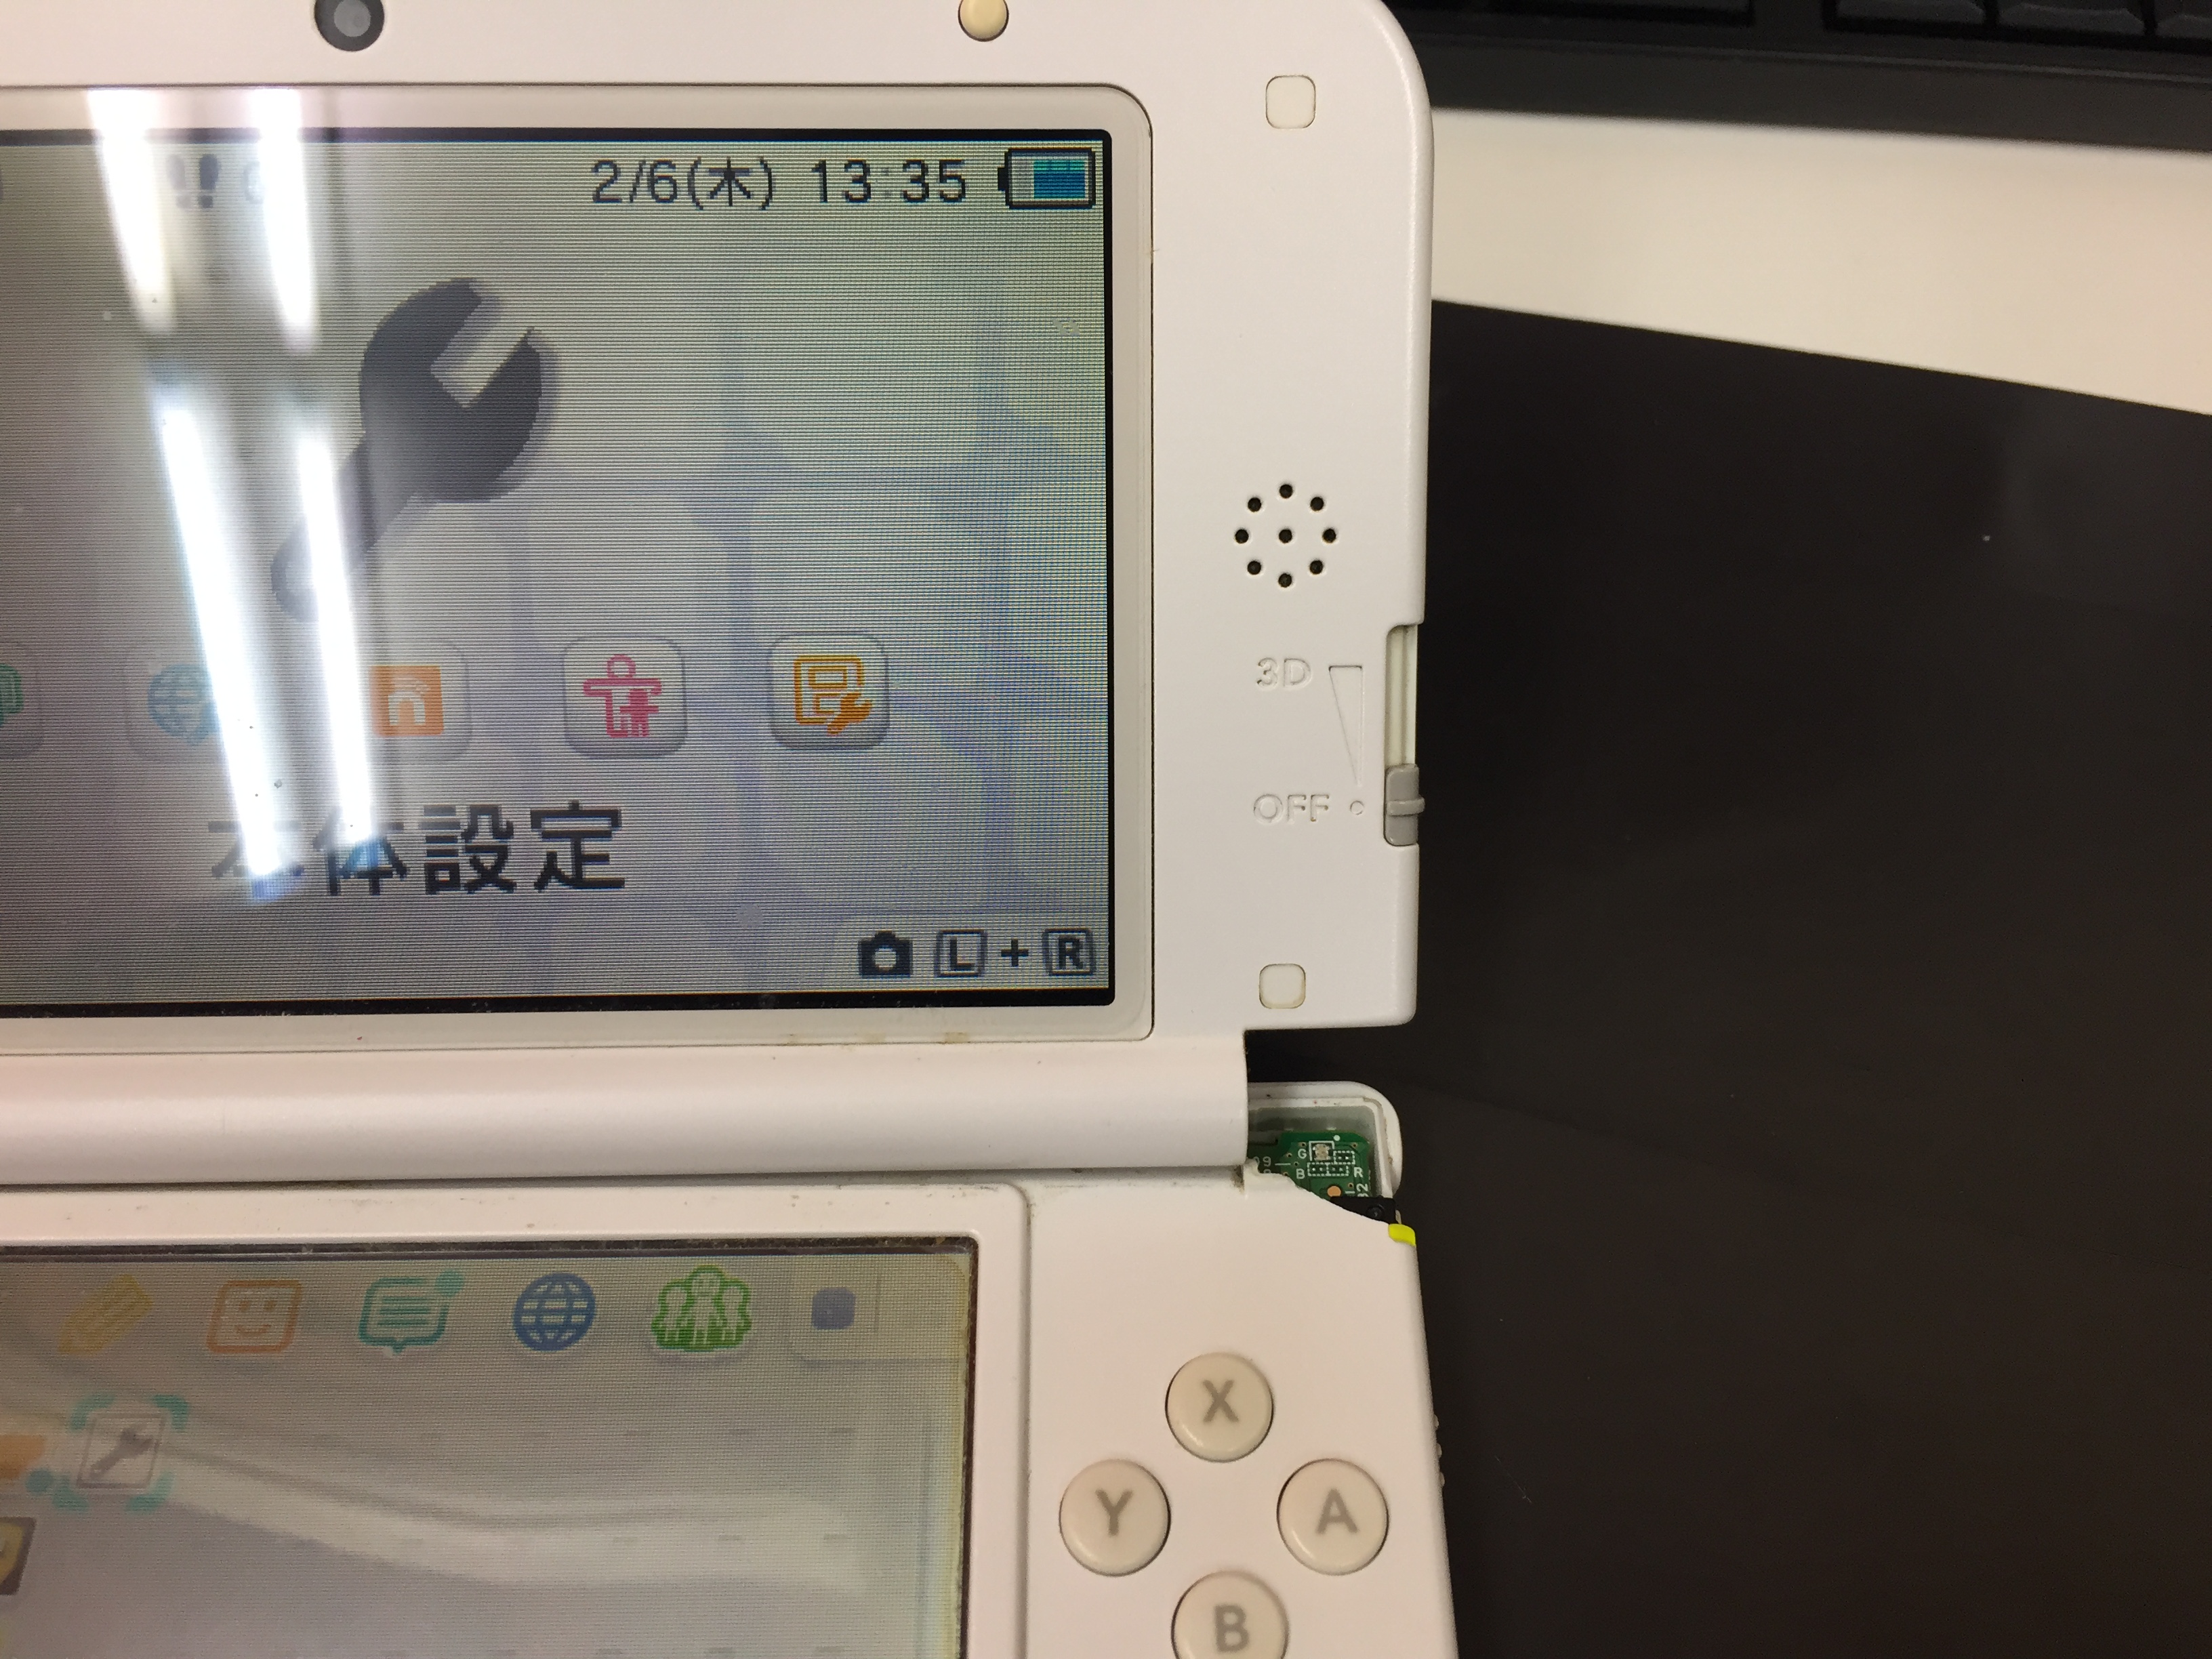 New3dsllハウジングが割れてしまった 上画面がプラプラしている Switch Nintendo3ds Psp 修理のゲームホスピタル Switch Nintendo3ds ニンテンドーds Psp 修理